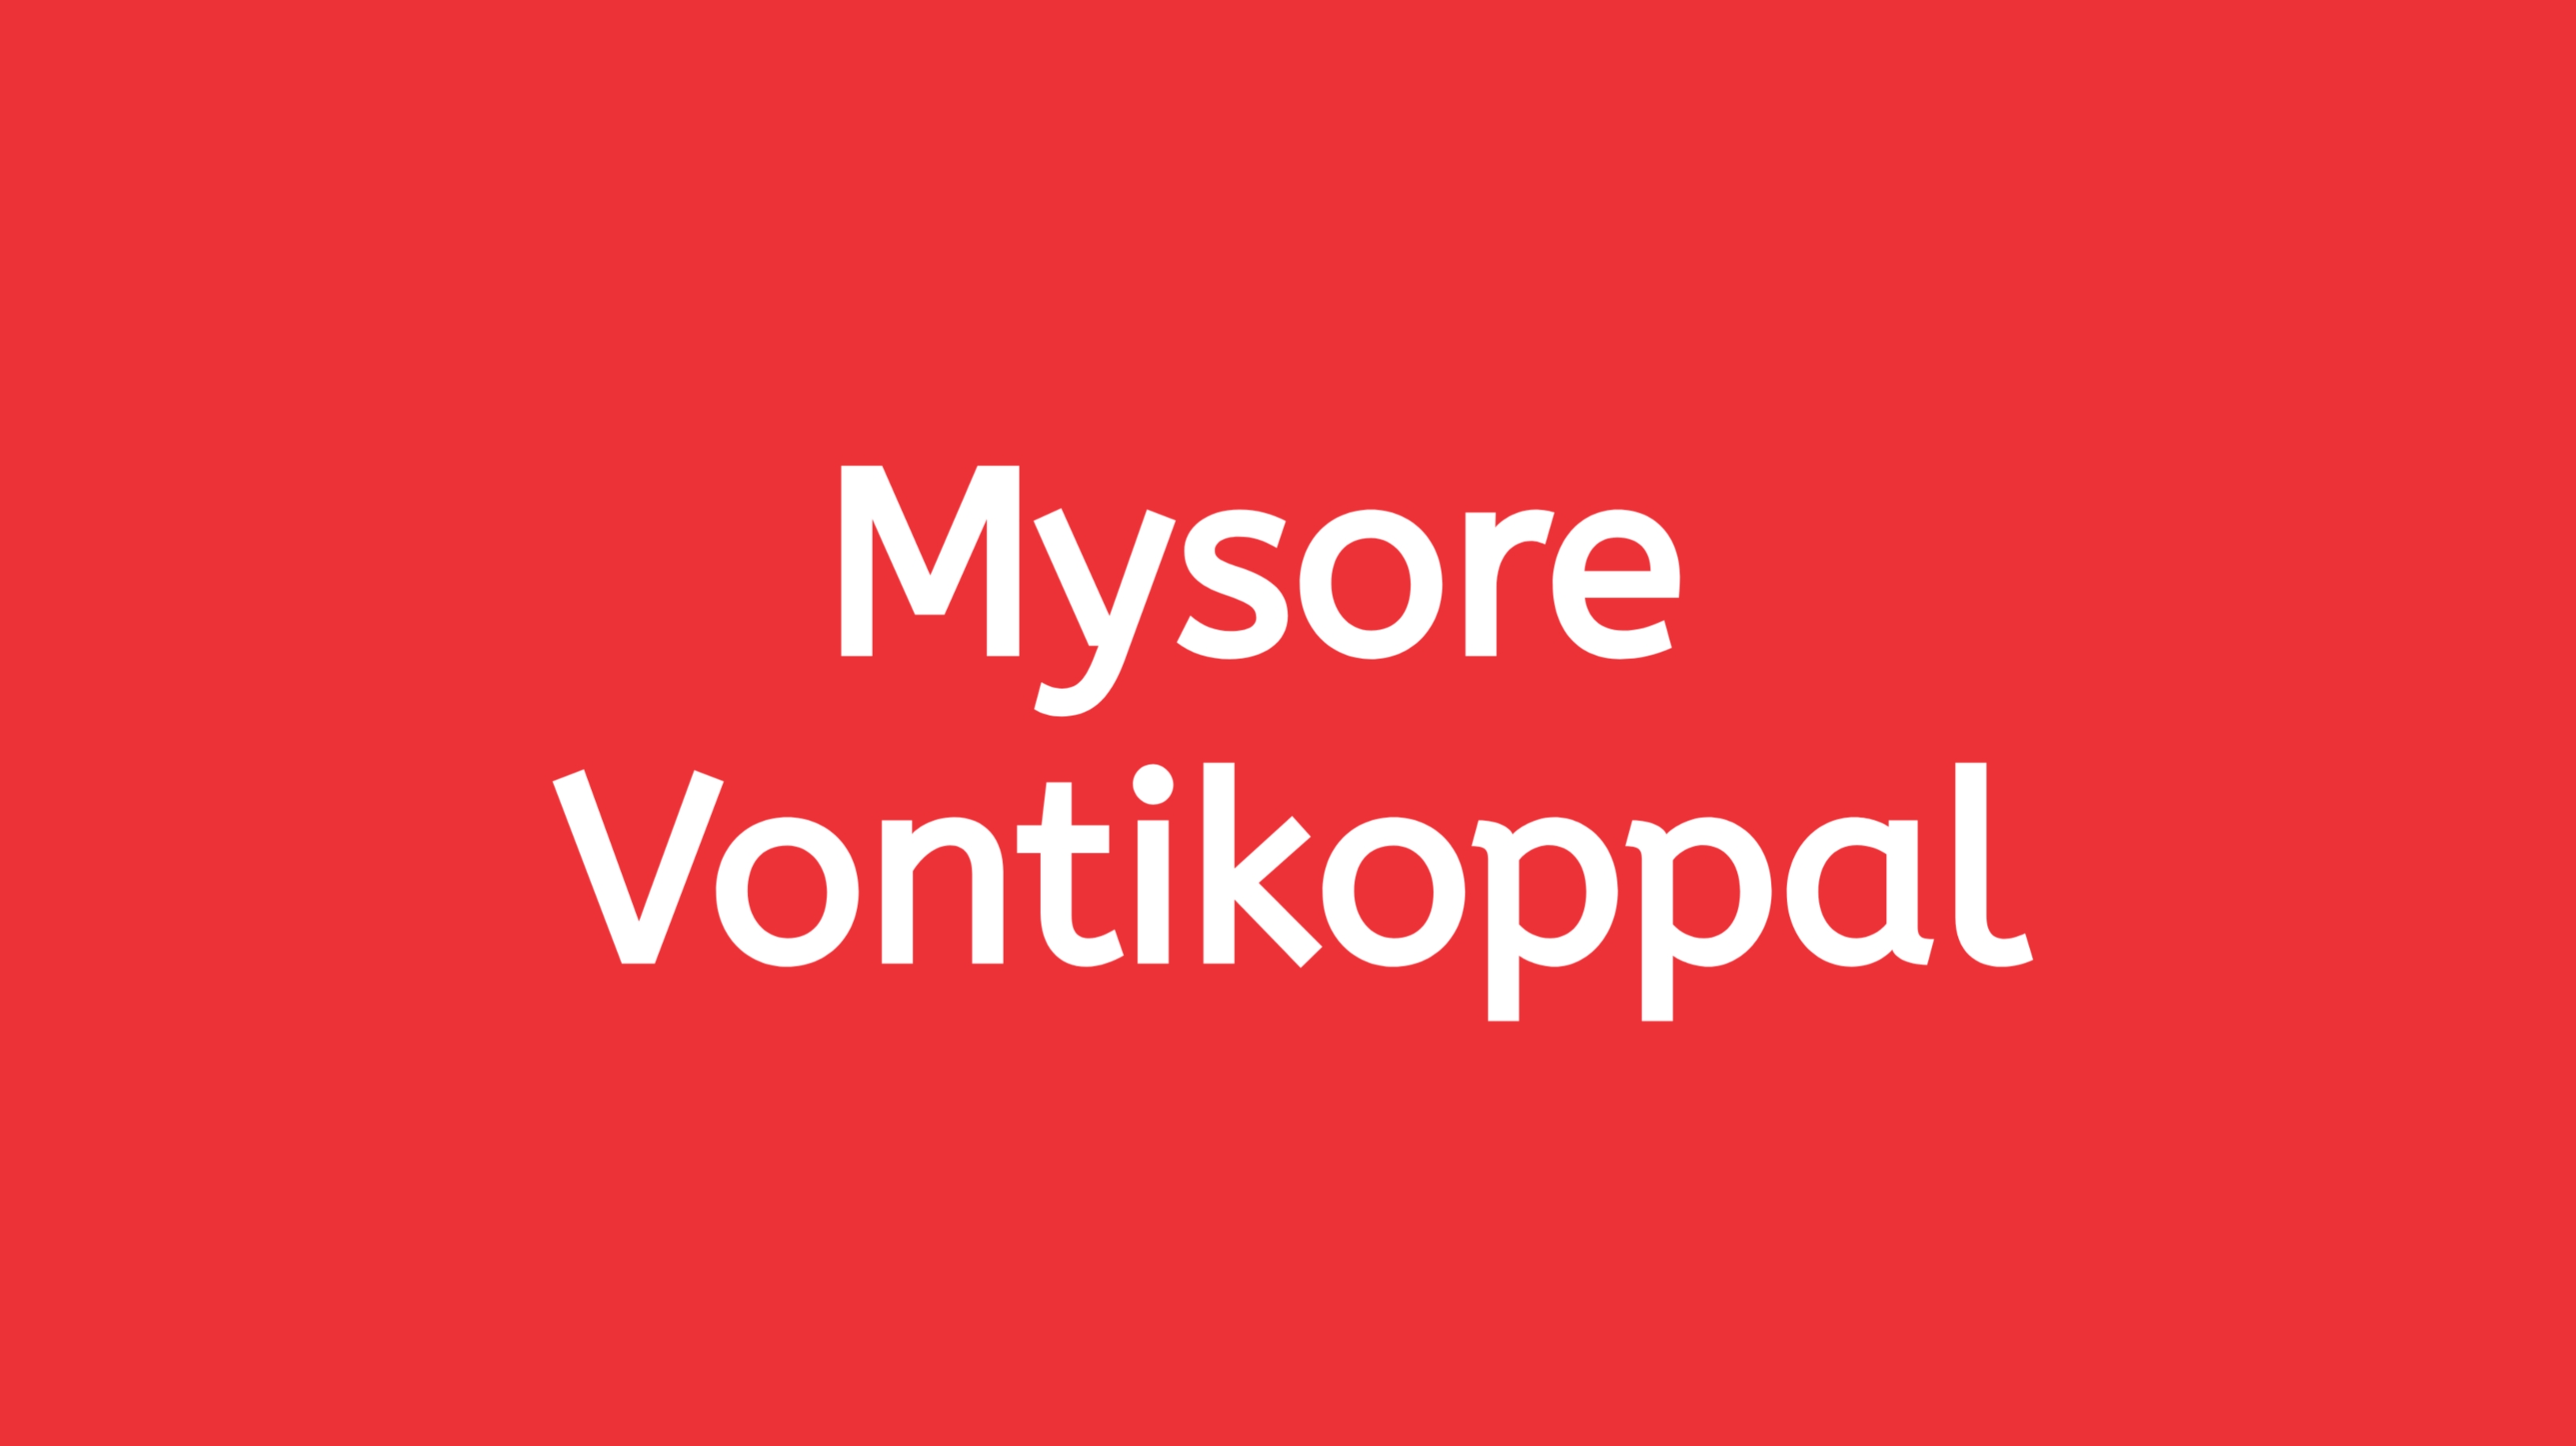 StayFit - Mysore - Vontikoppal